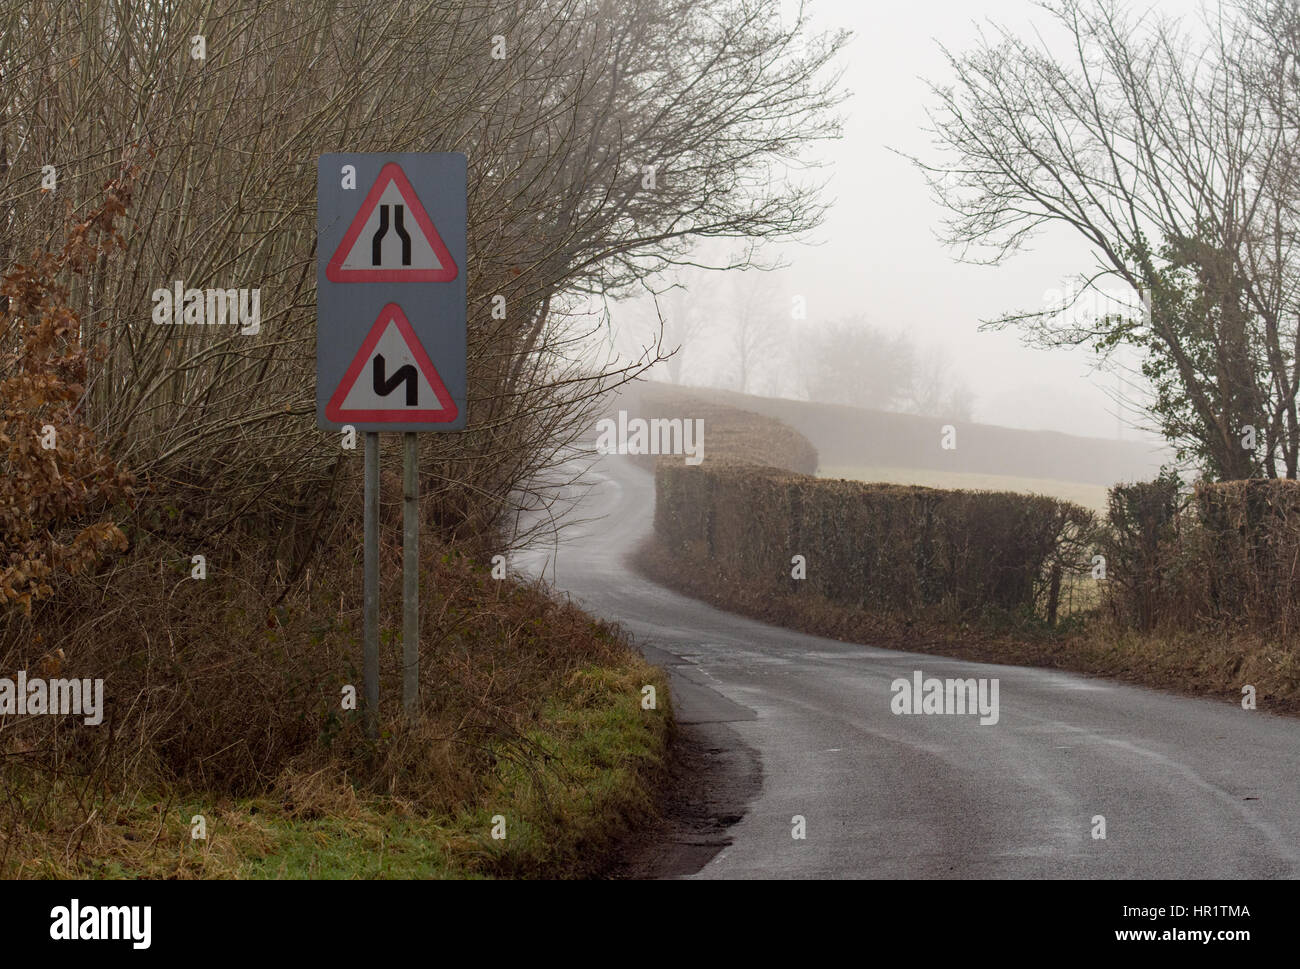 Route Narrows et double coudes, première à gauche, sur une route dans le pays de Galles avec la lumière de brouillard d'hiver. Près de la succession de William Henri Gebhard (1827-1905) dans le parc national de Brecon Banque D'Images